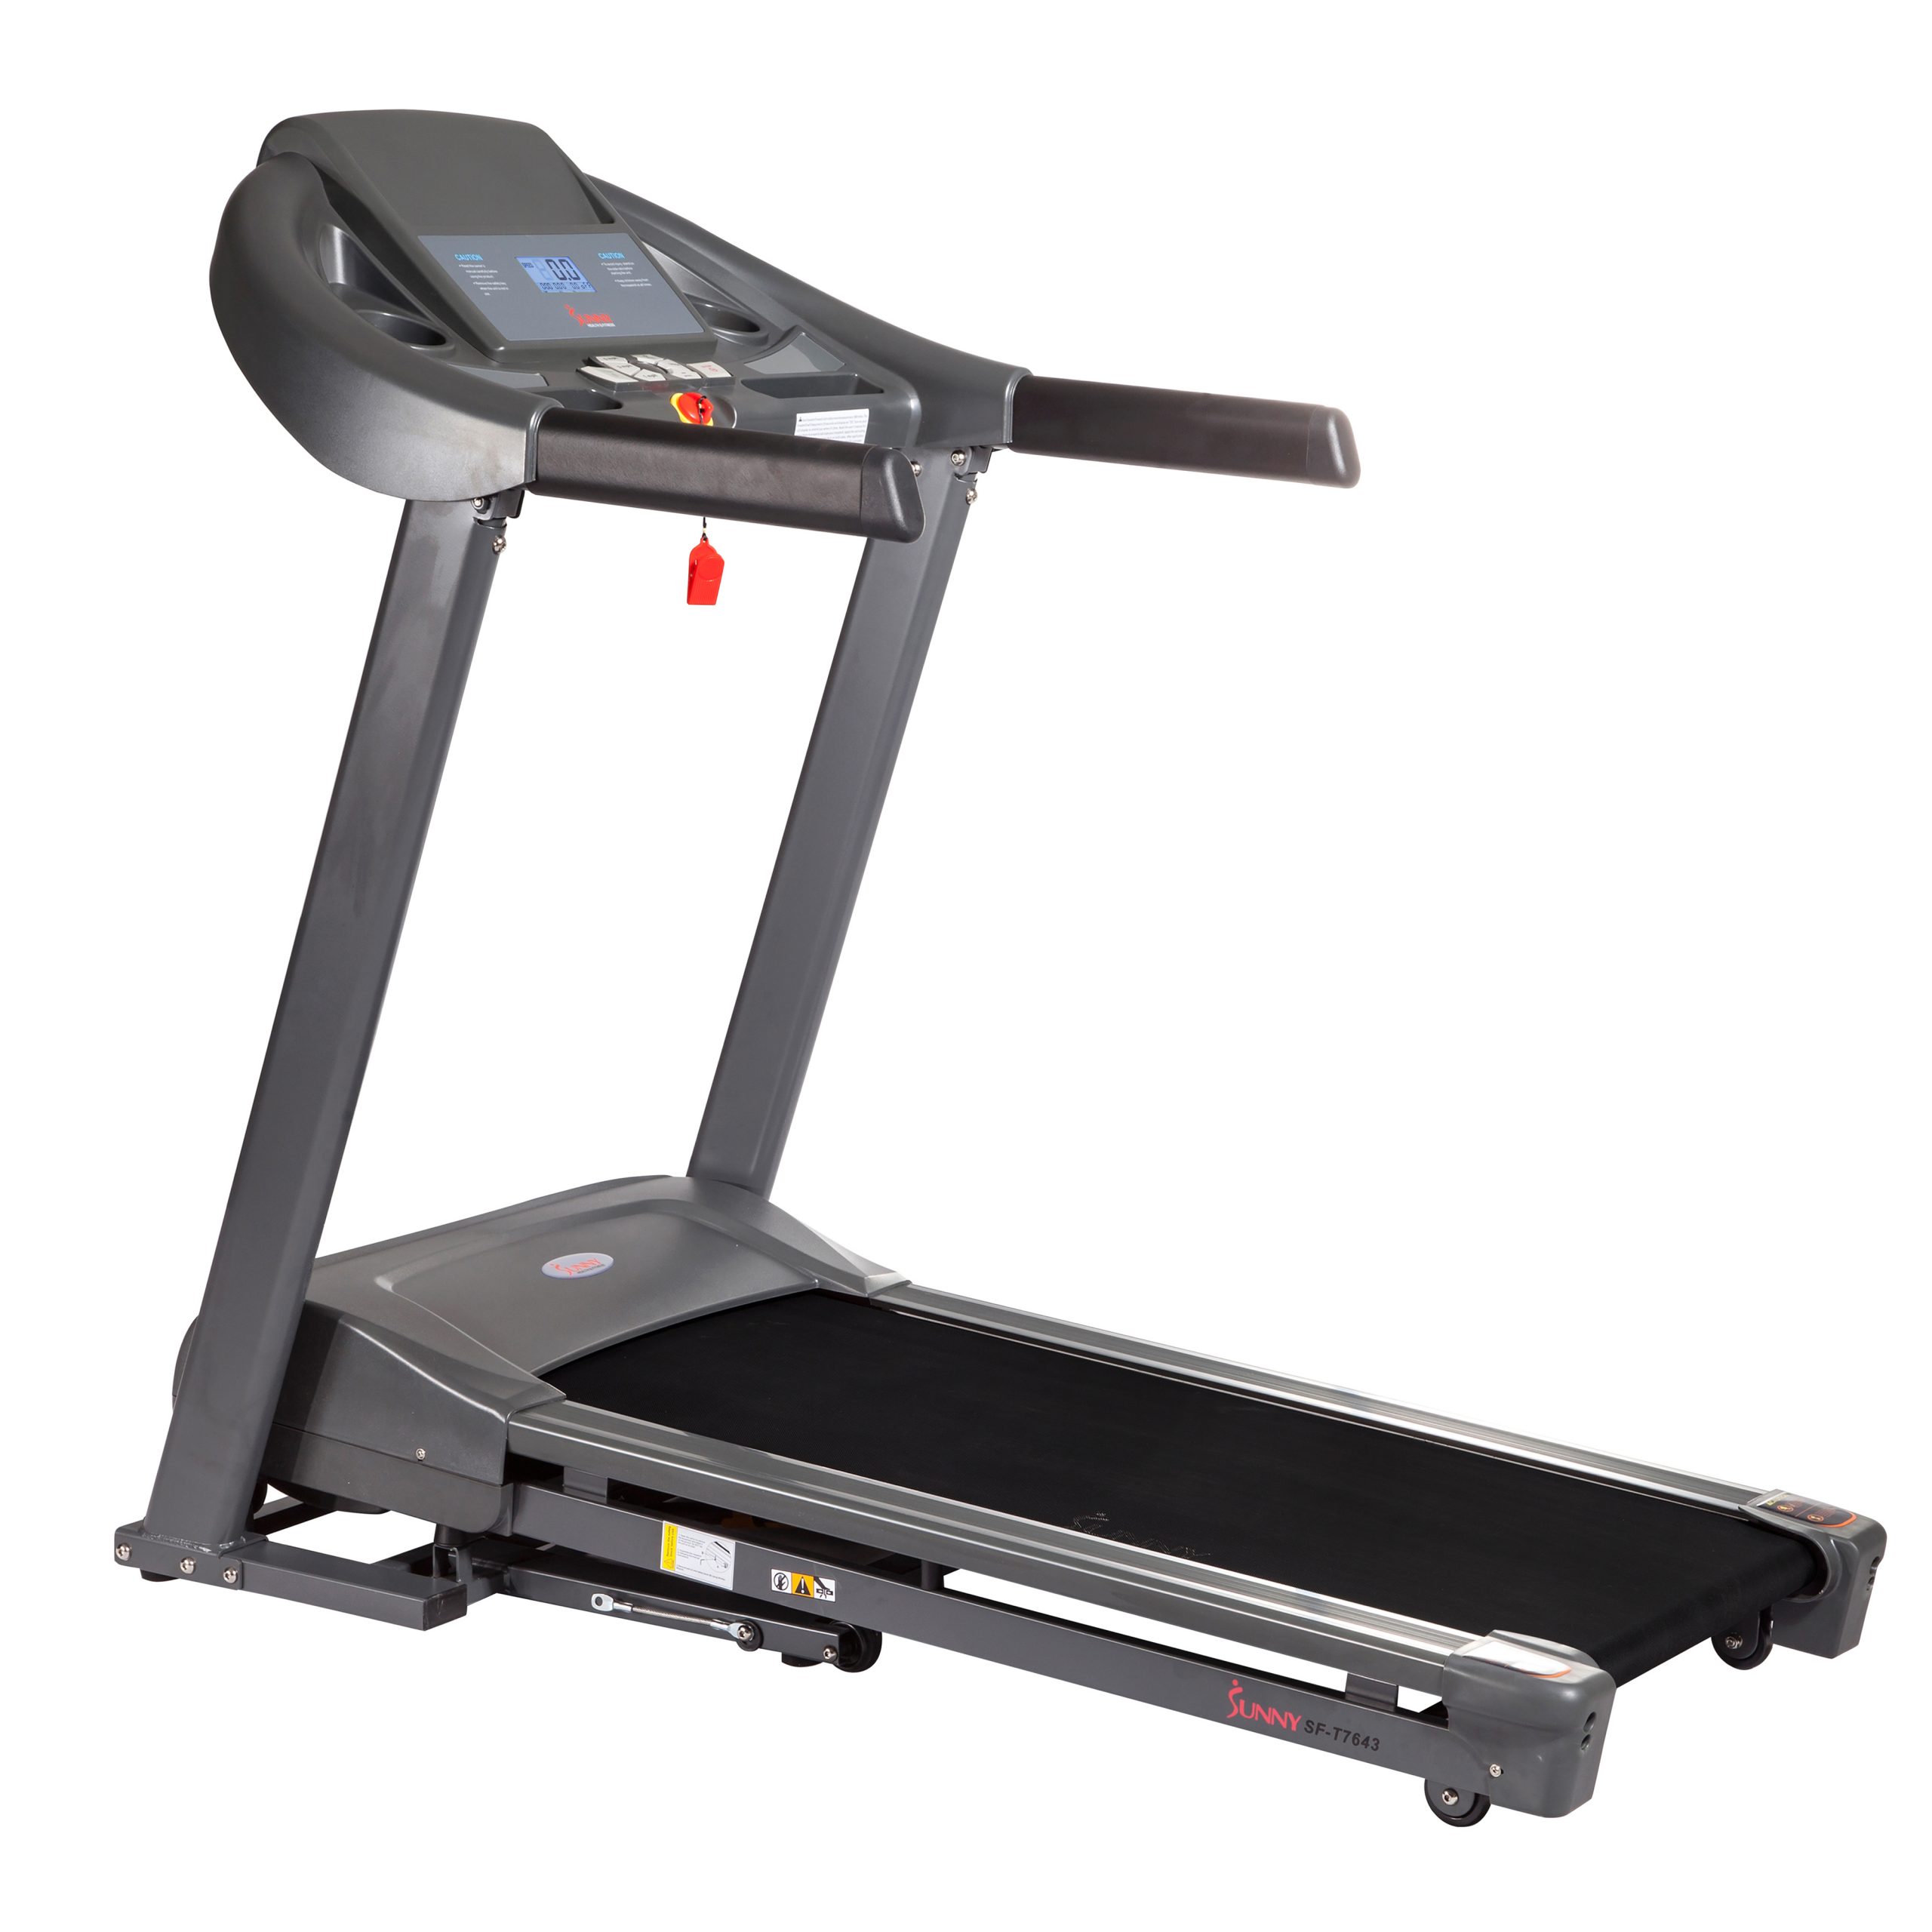 Sunny Health & Fitness Heavy Duty Walking Treadmill